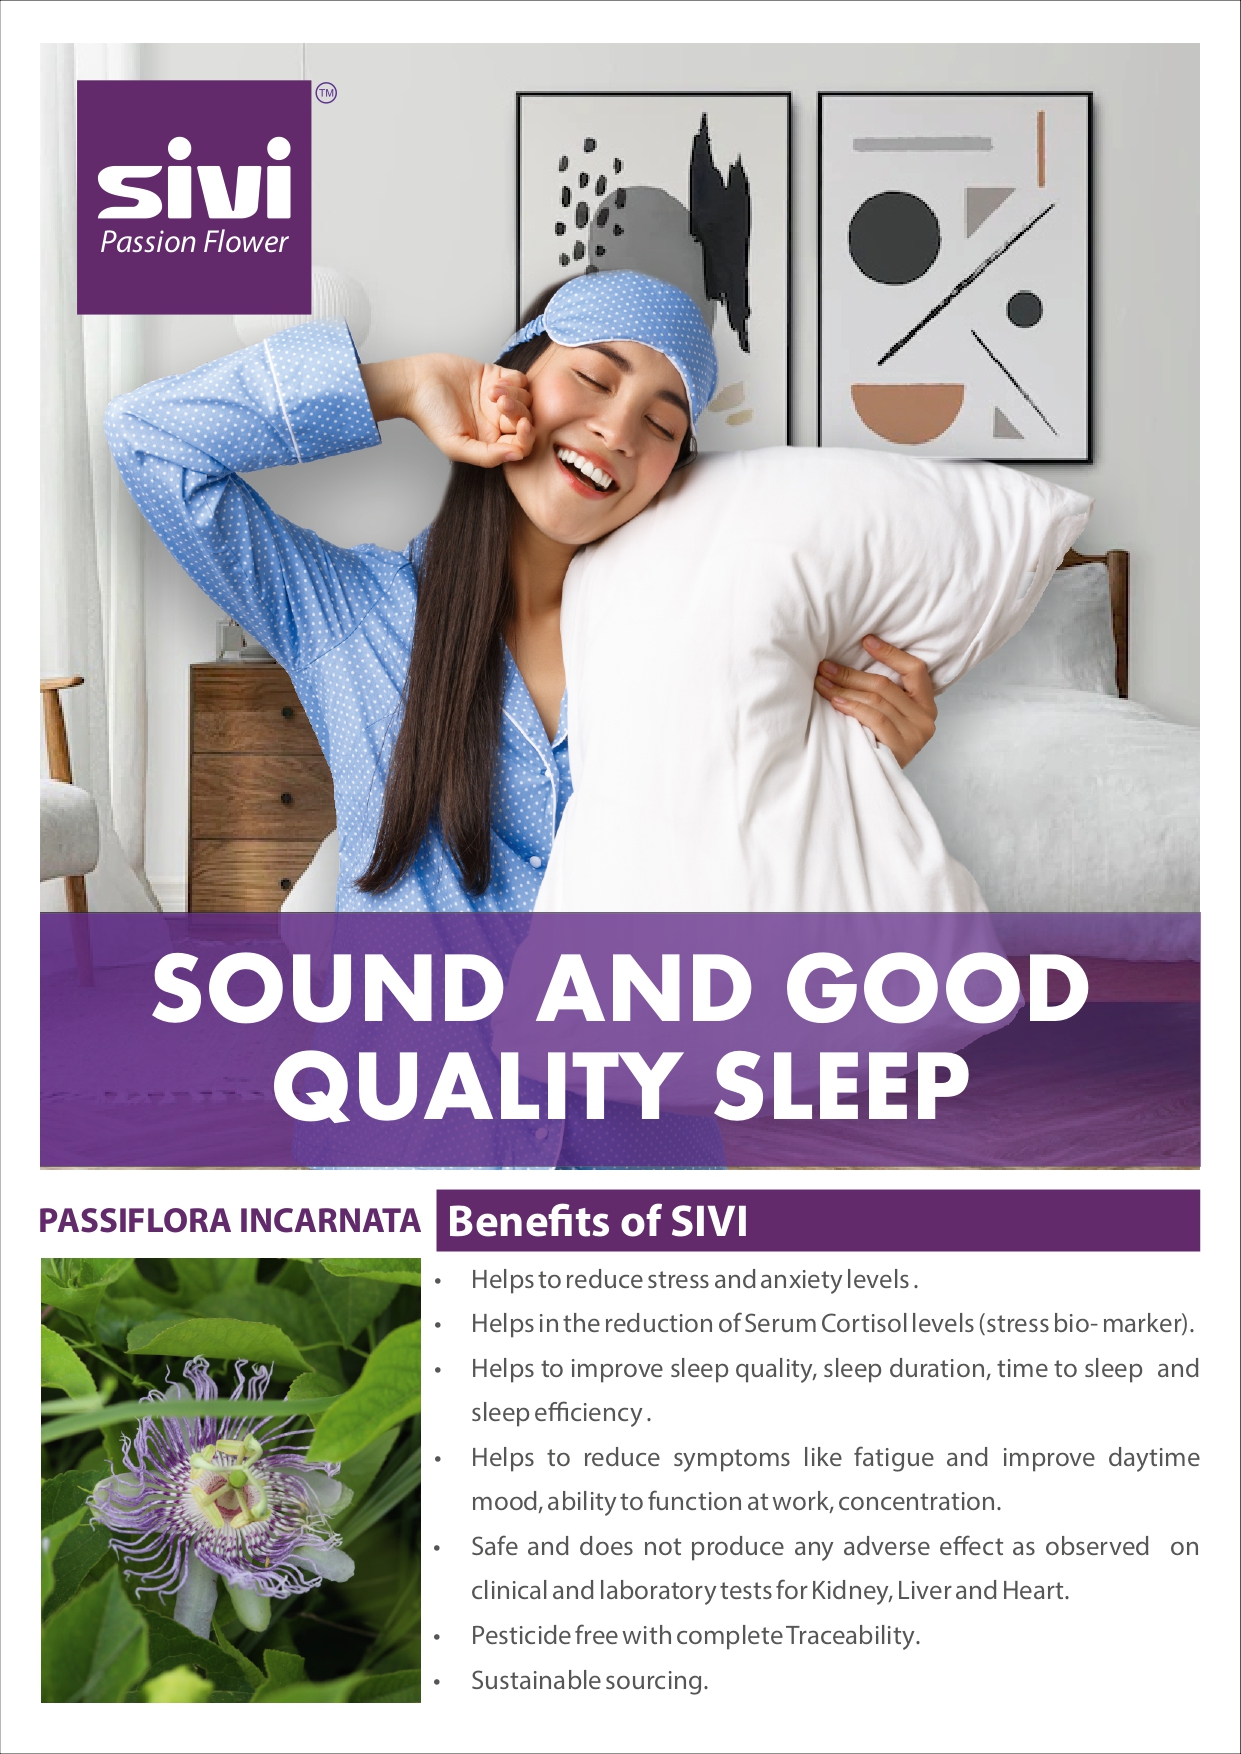 SIVI - For quality sleep